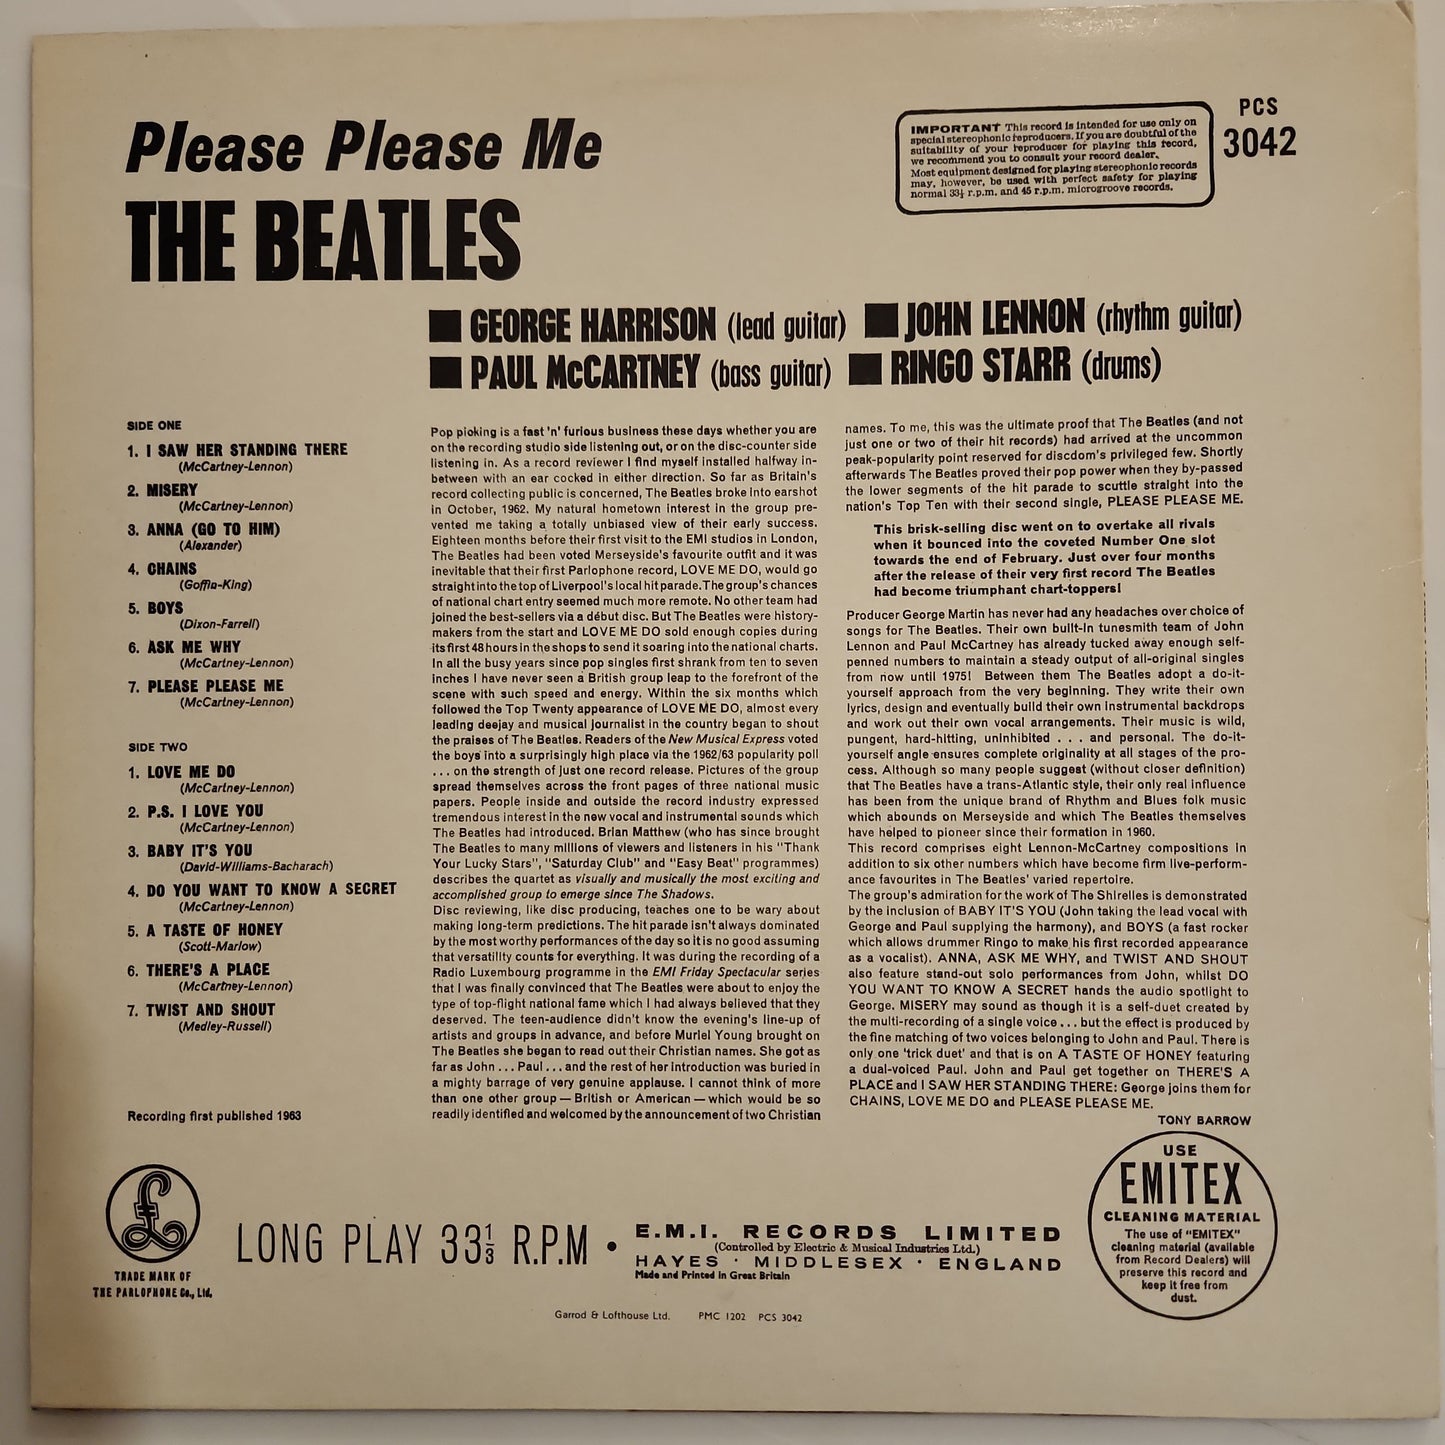 The Beatles - Please Please Me (Q)